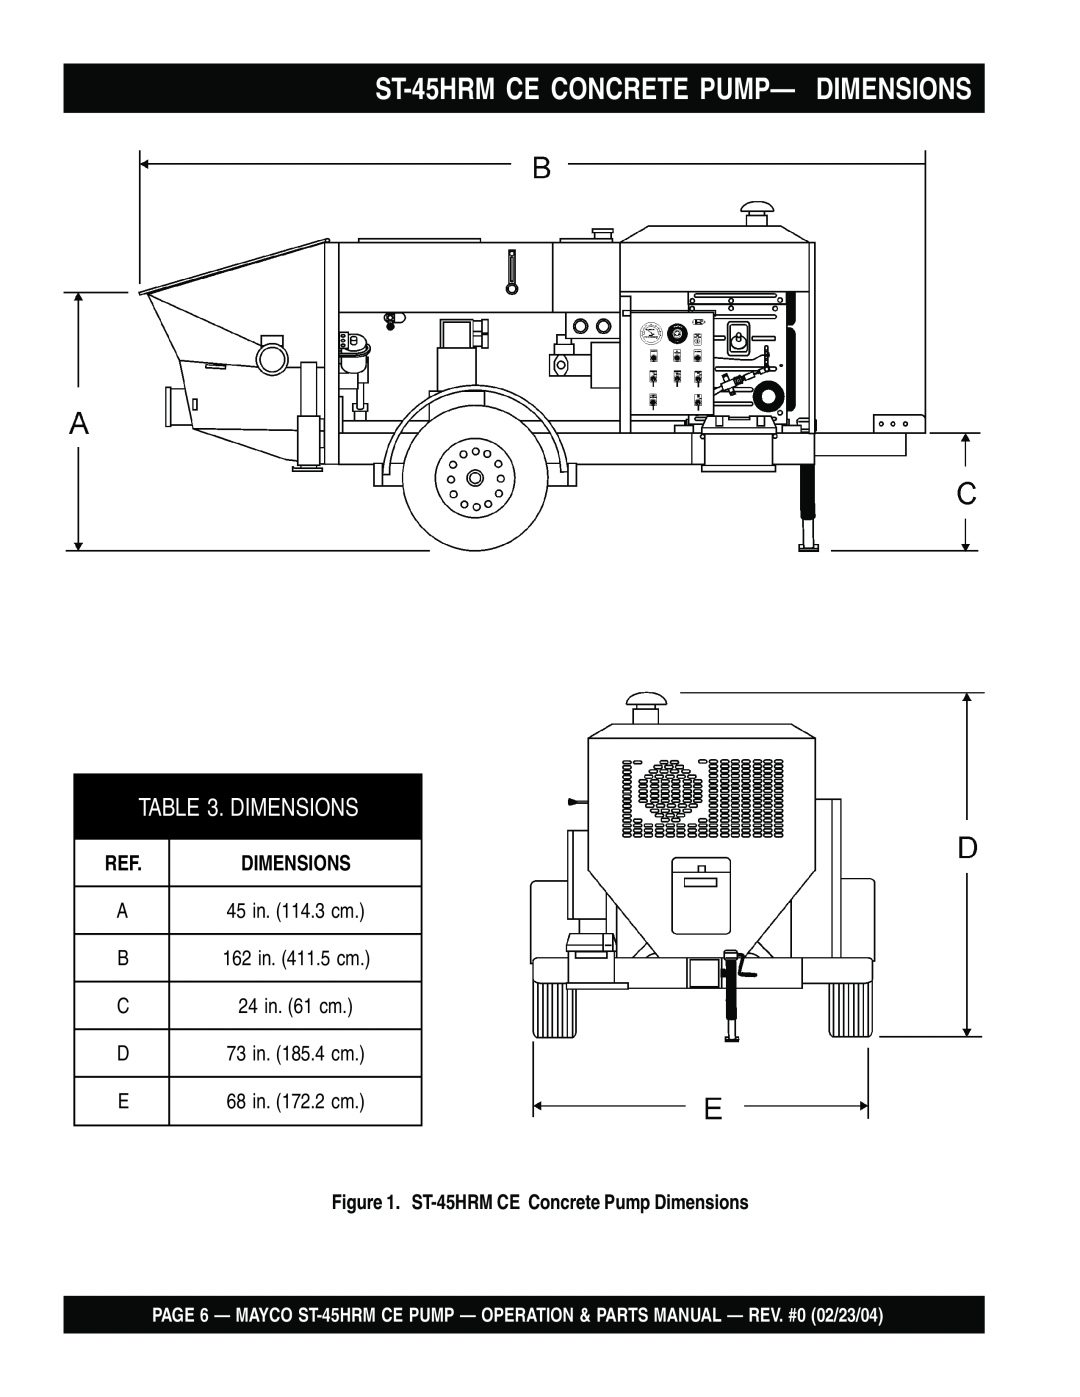 Multiquip ST-45HRM CE manual ST-45HRMCE CONCRETE PUMP— DIMENSIONS, ST-45HRMCE Concrete Pump Dimensions 